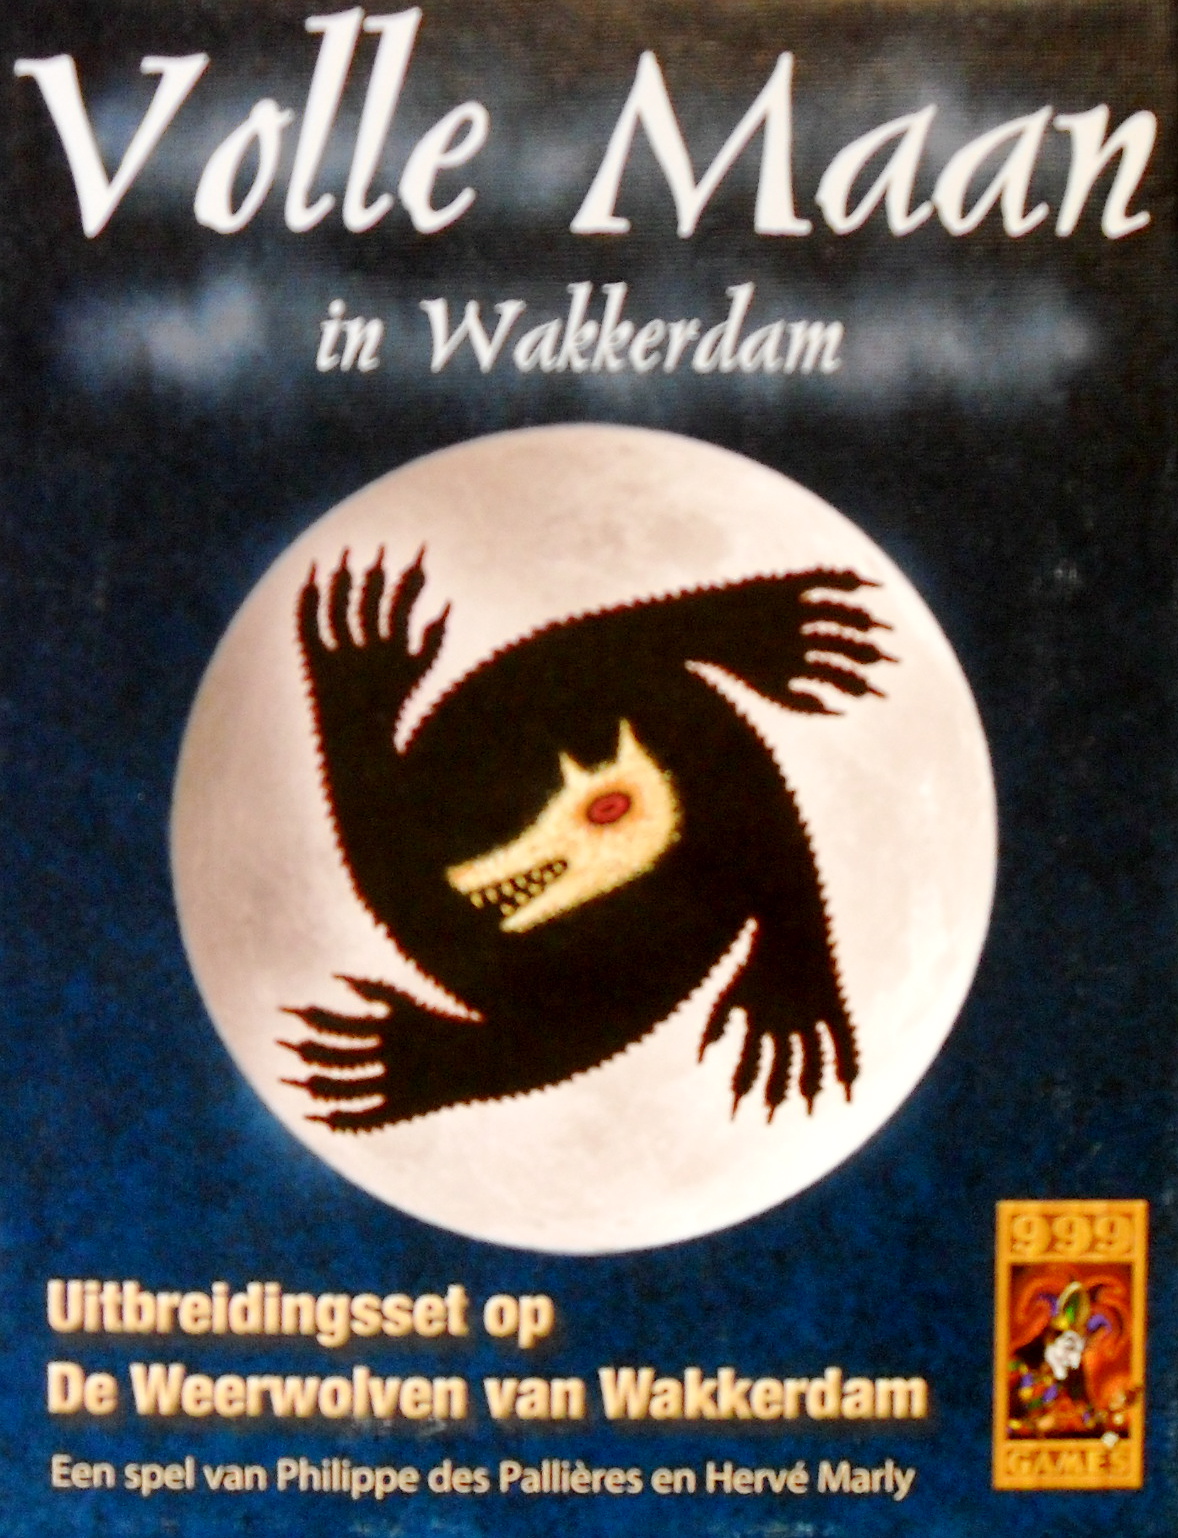 Volle Maan in Wakkerdam: Uitbreidingsset op De Weerwolven van Wakkerdam